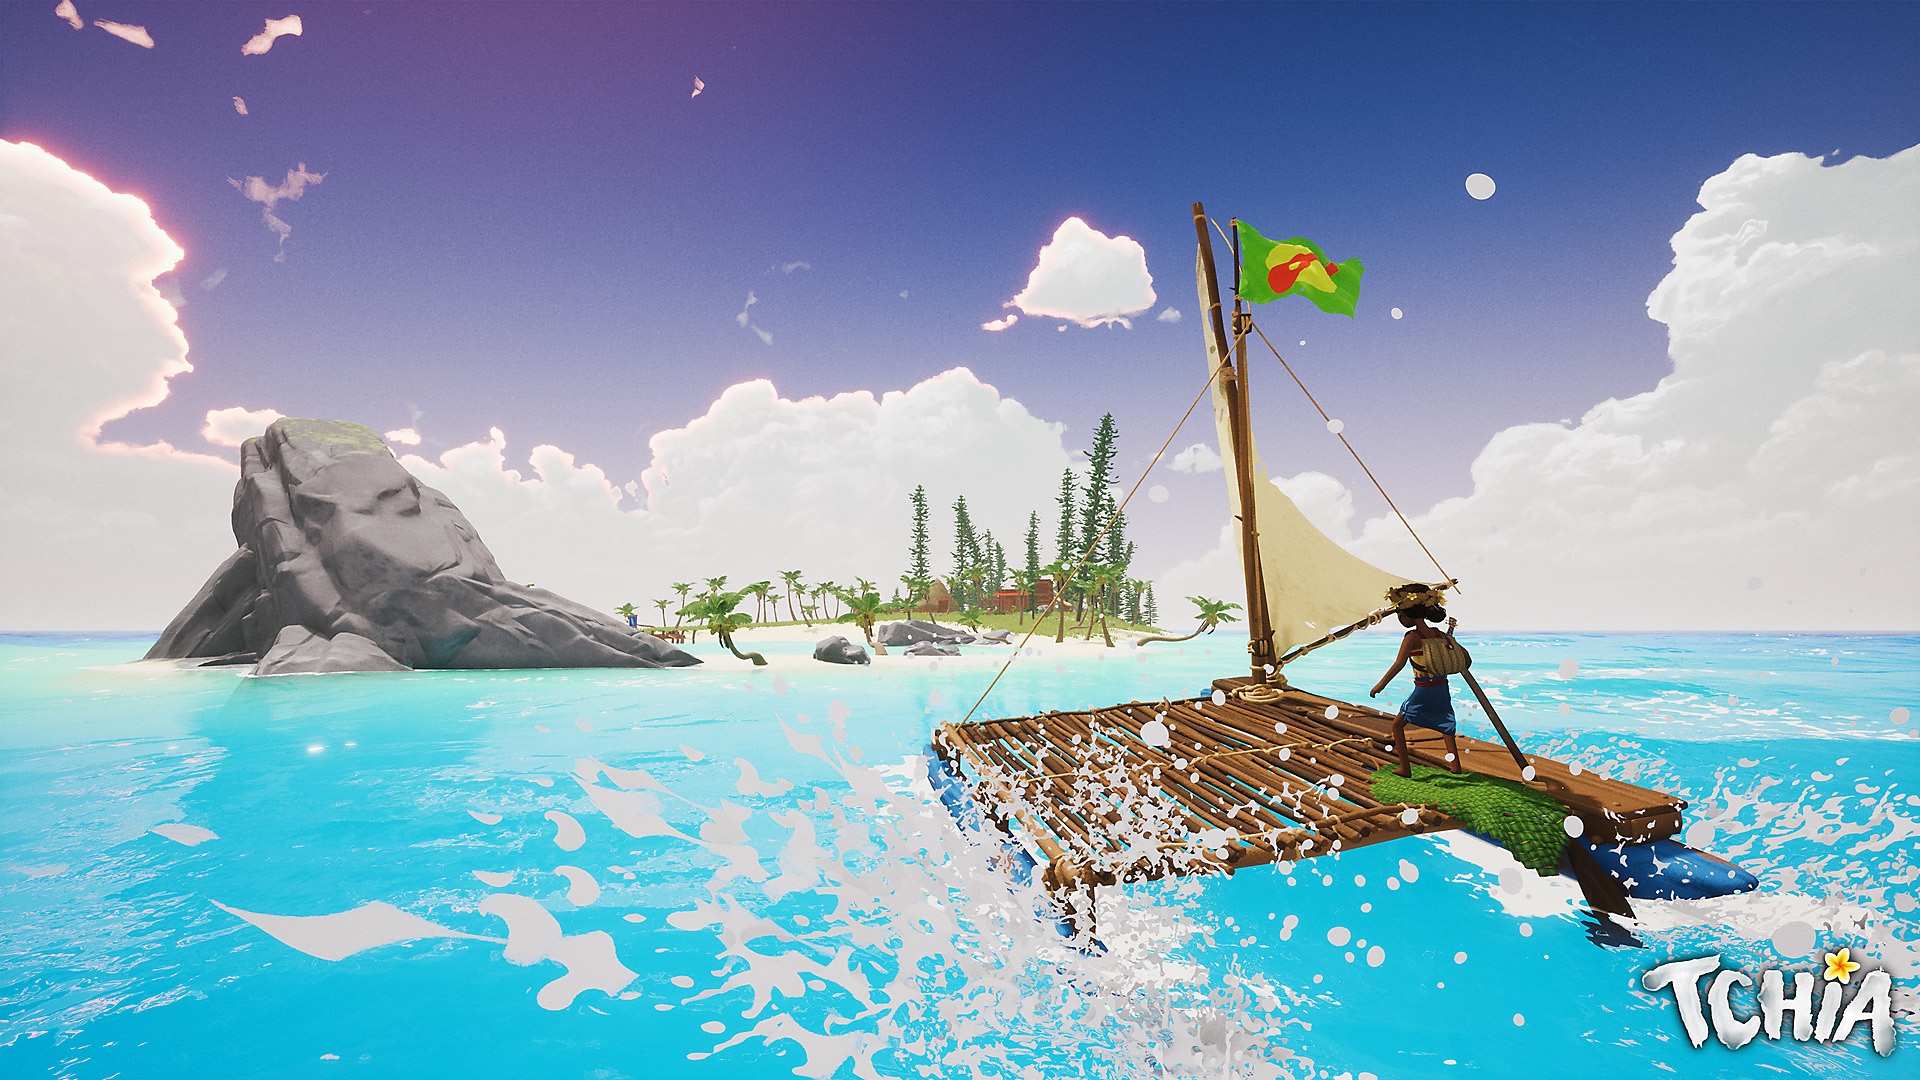 Tchia – zrzut ekranu przedstawiający główną postać płynącą na tratwie, ku wyspie